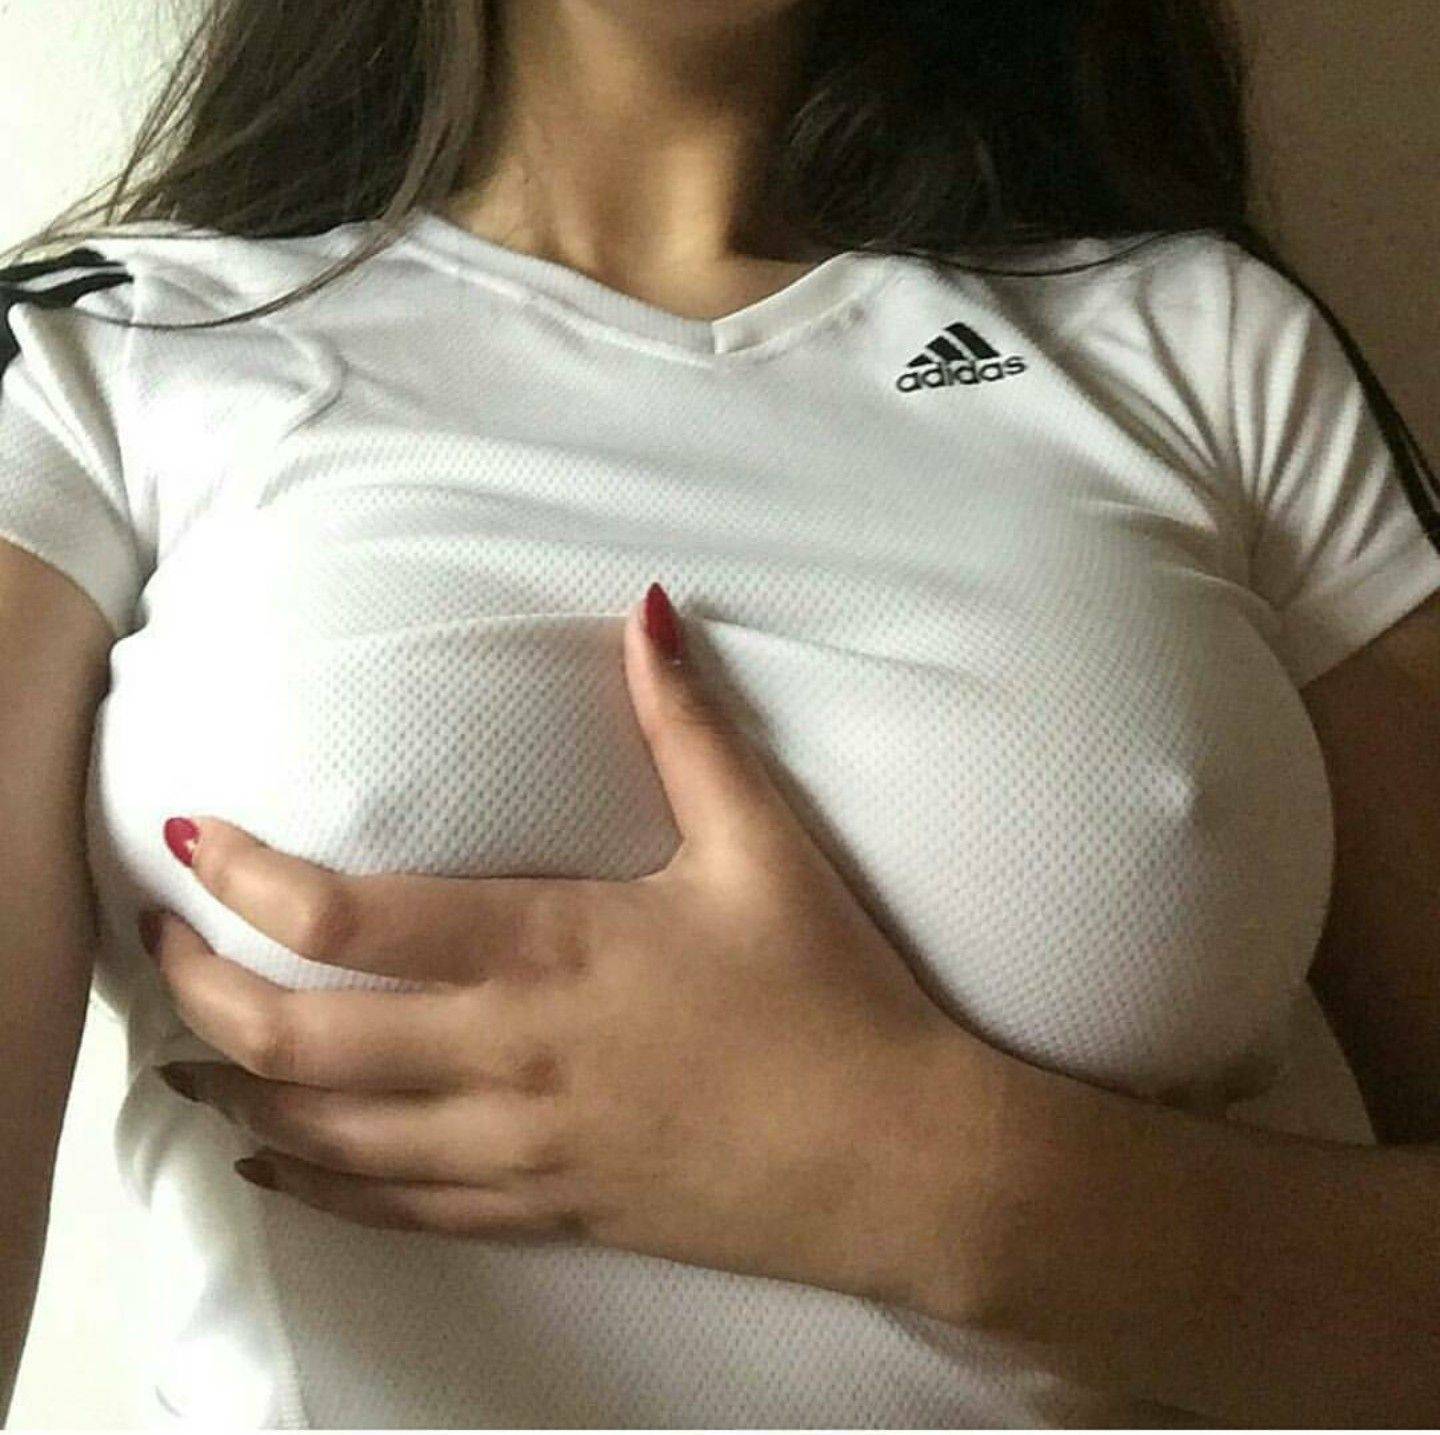 Grab boobs